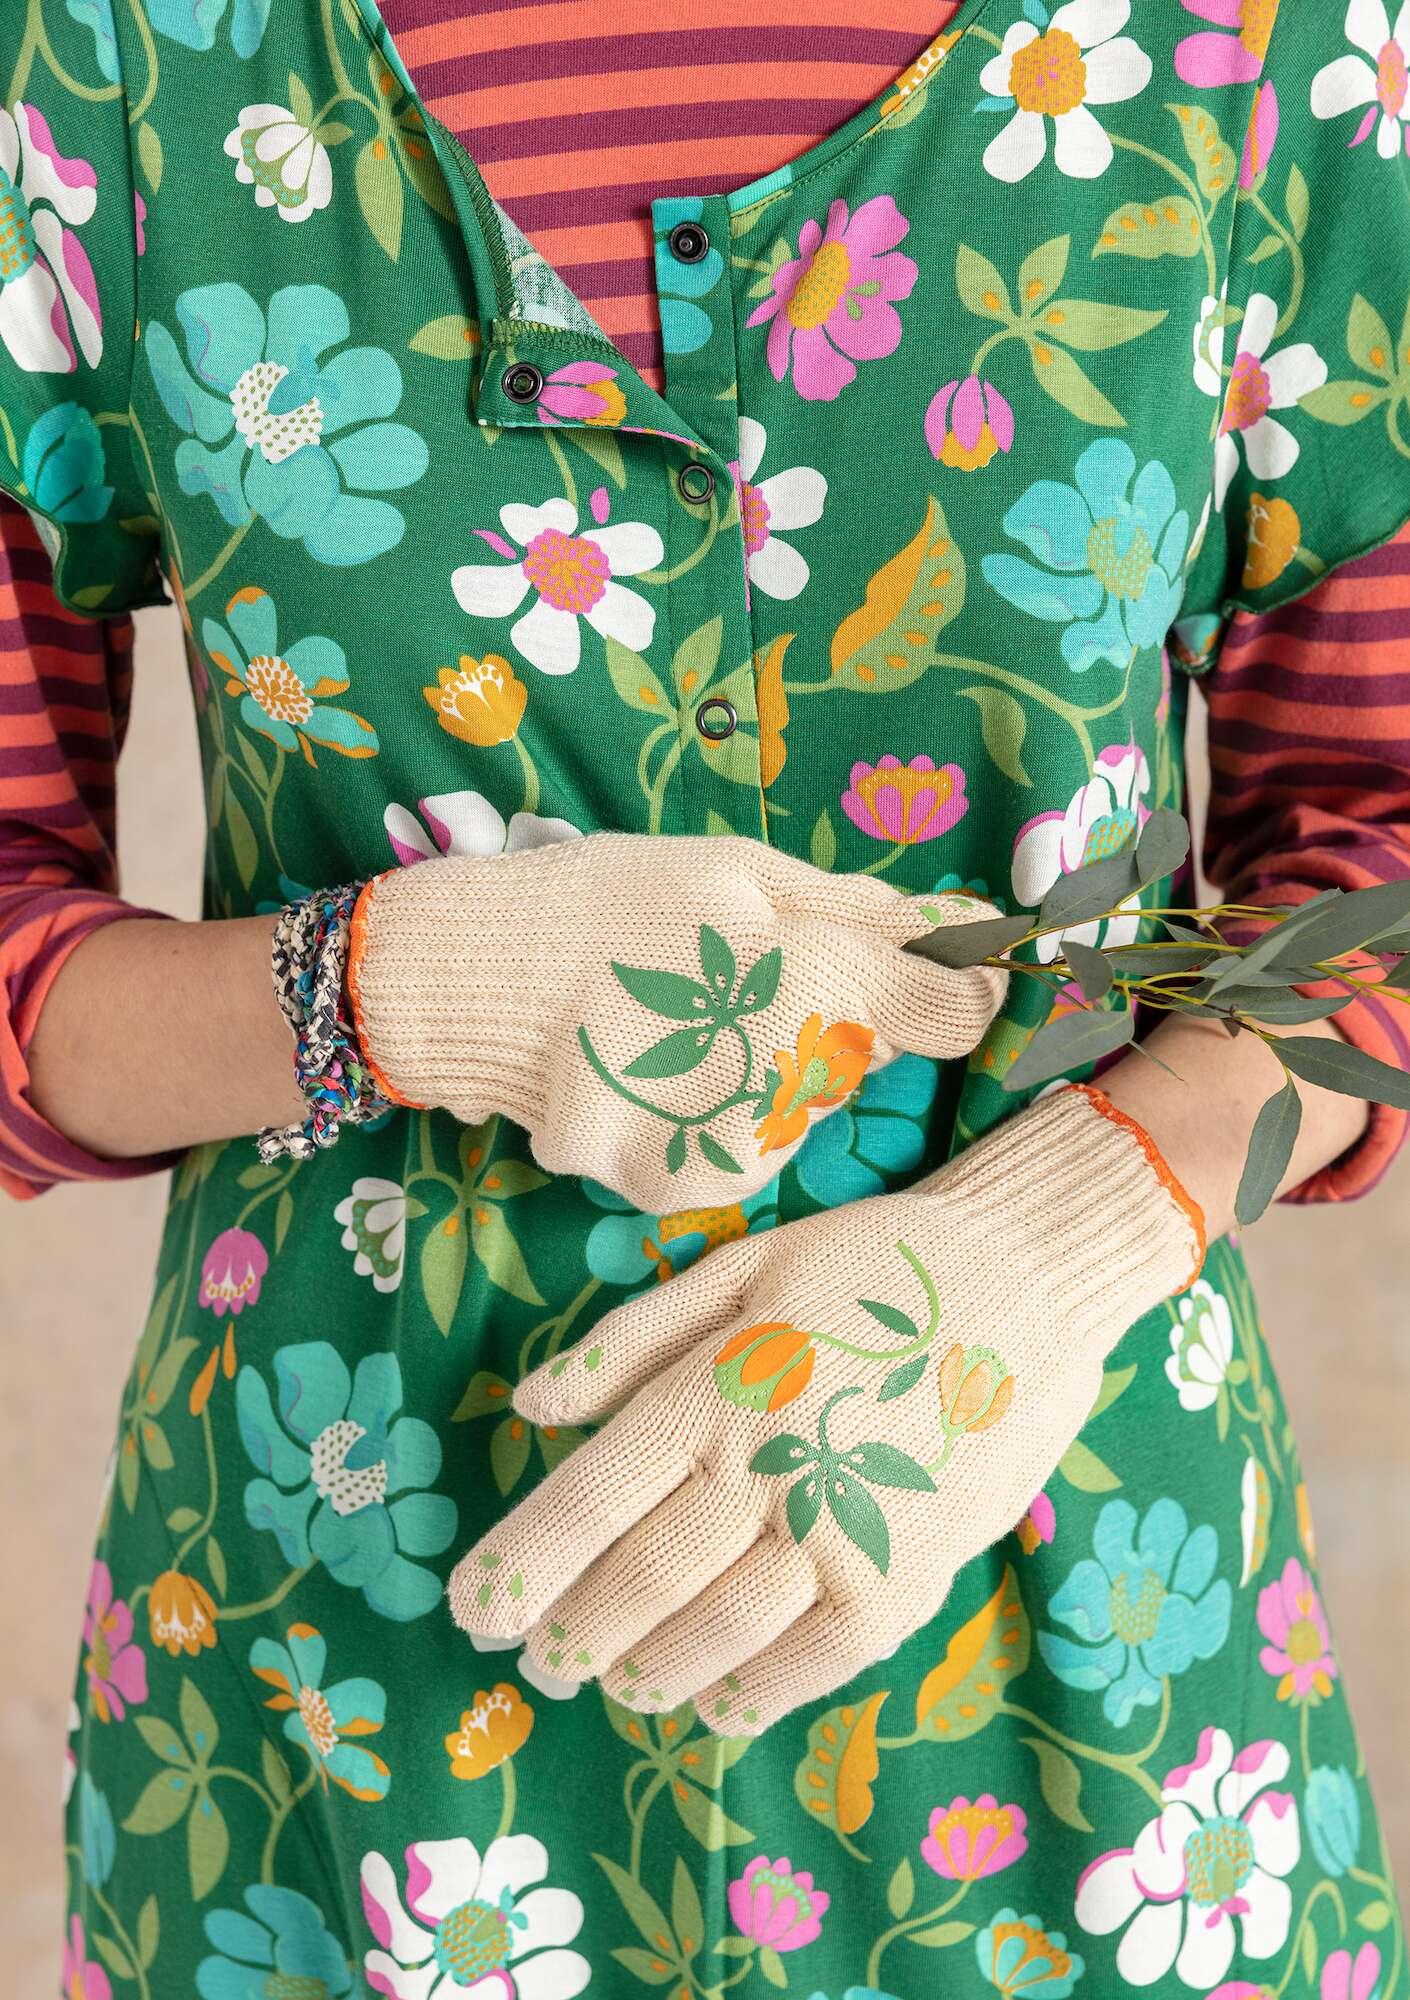 “Gardener” gardening gloves made from recycled polyester light sand thumbnail